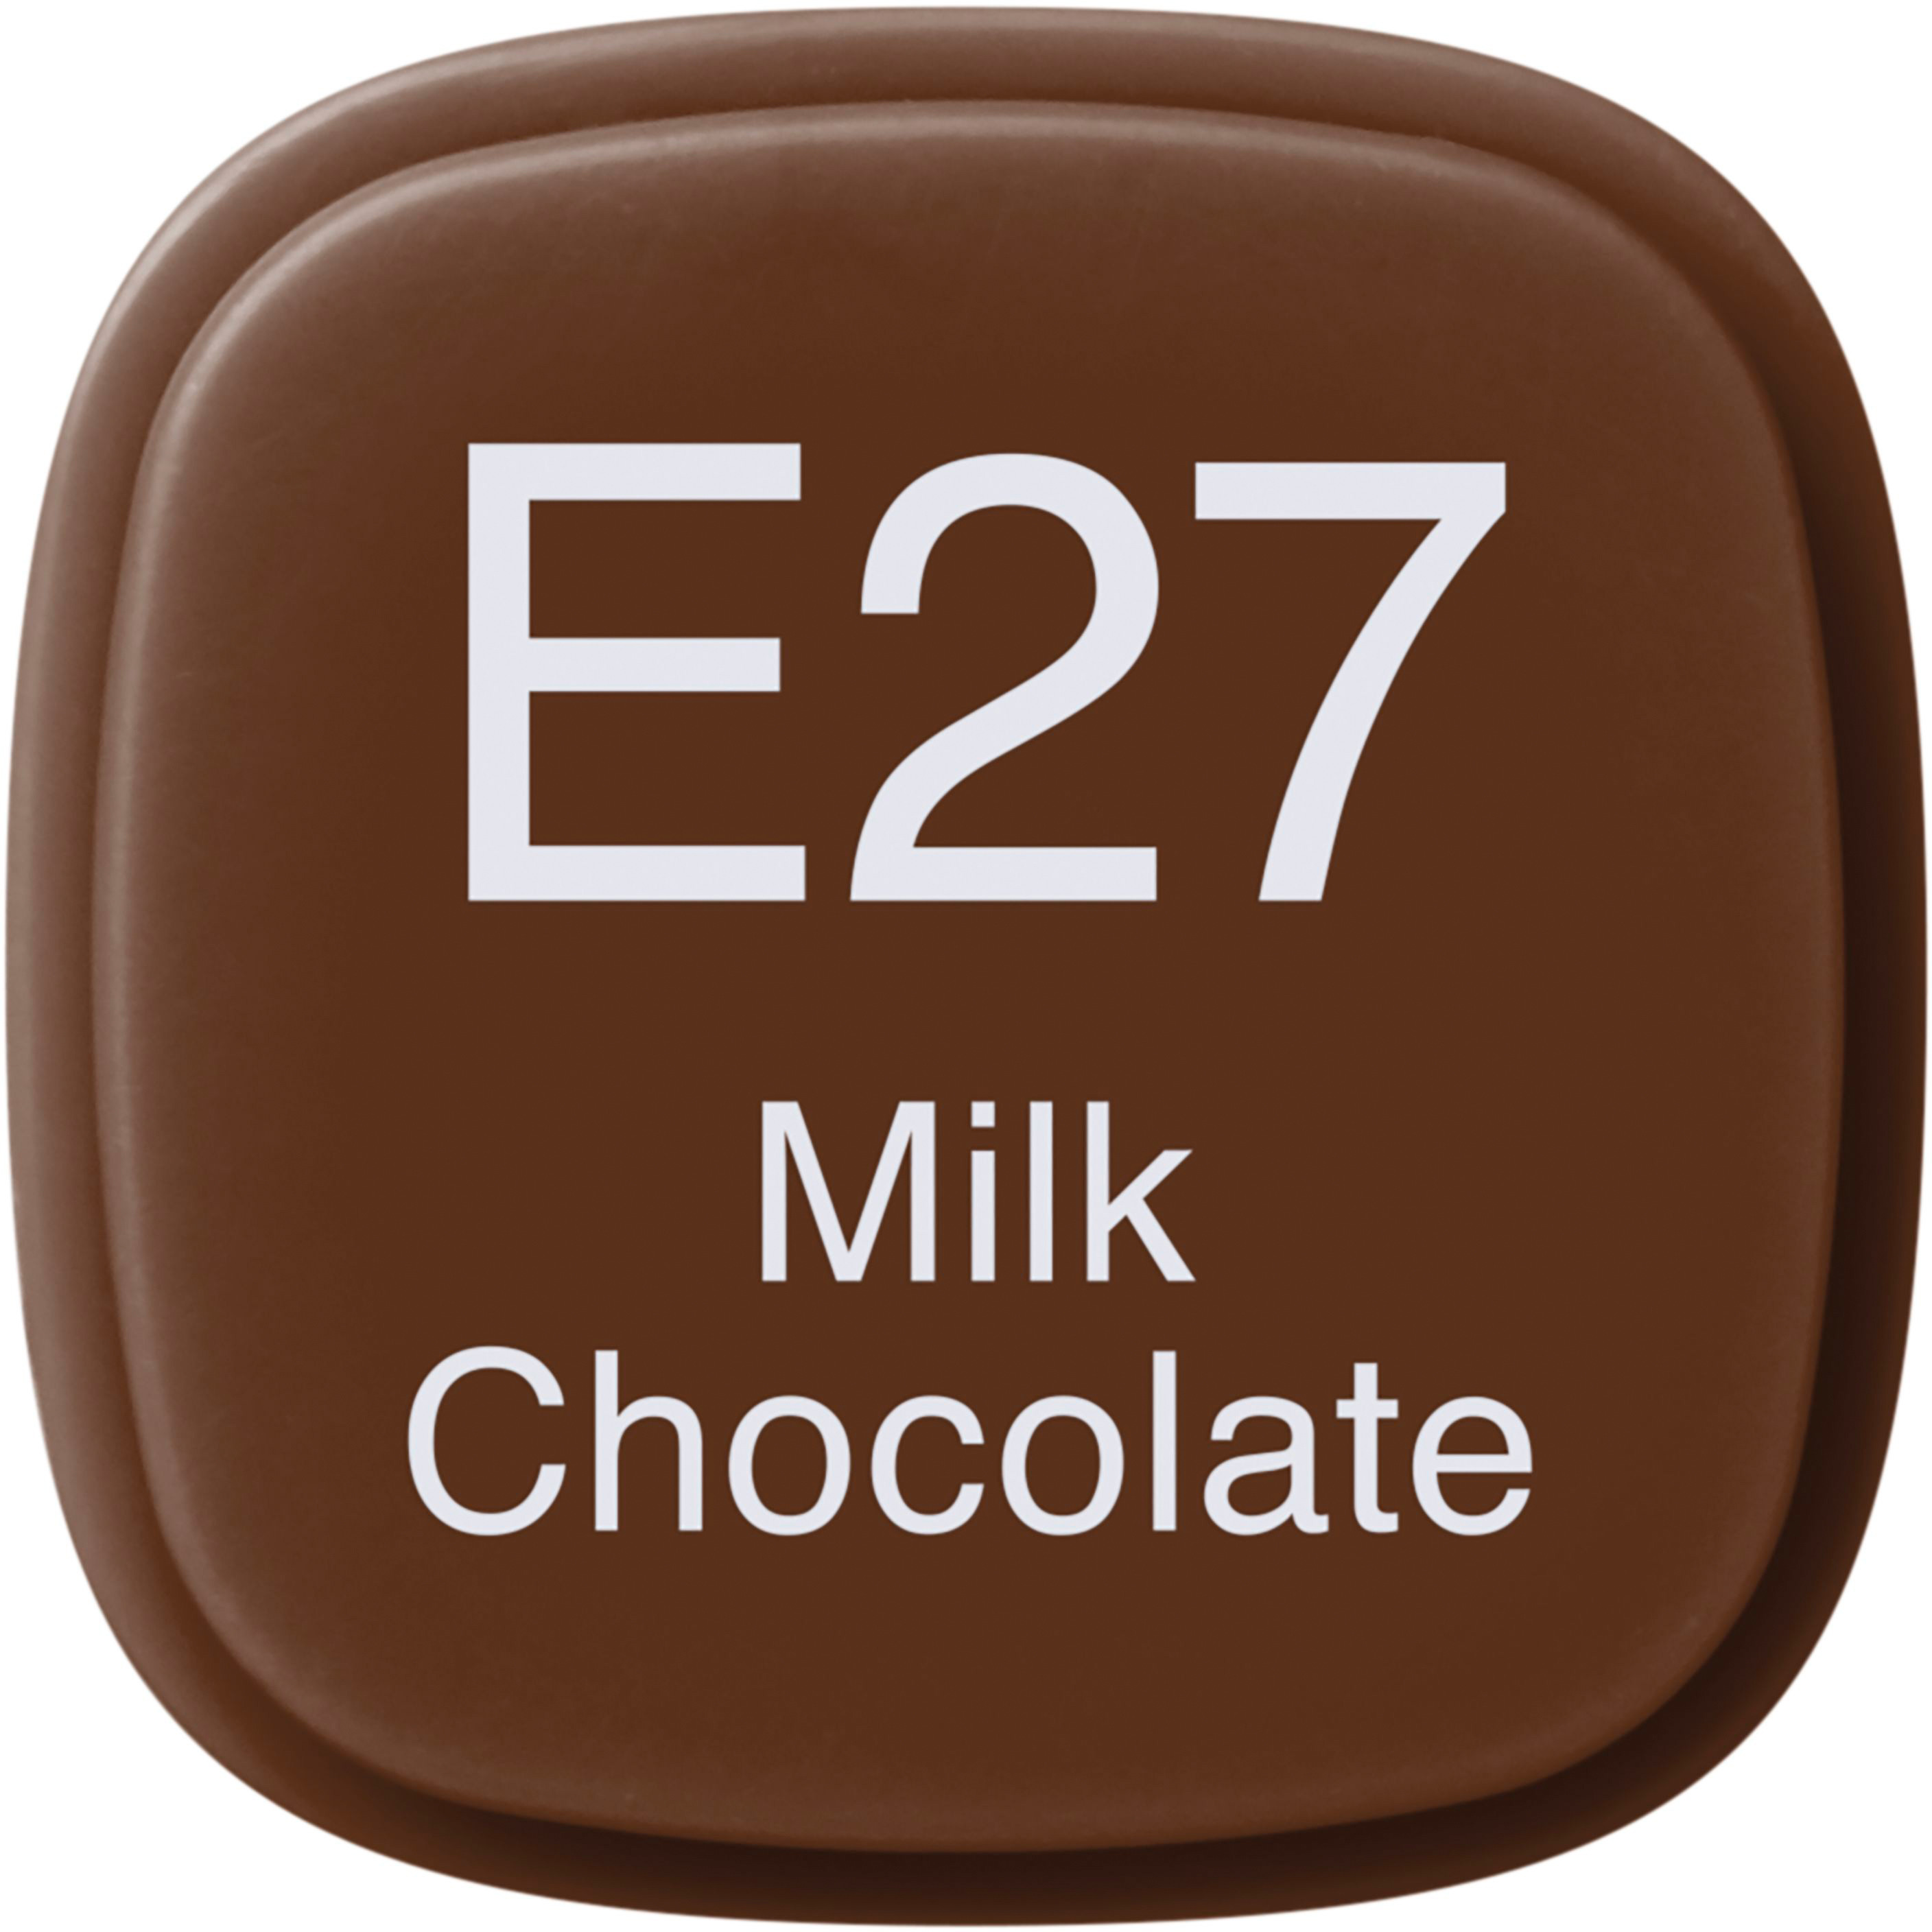 COPIC Marker Classic 20075120 E27 - Milk Chocolate